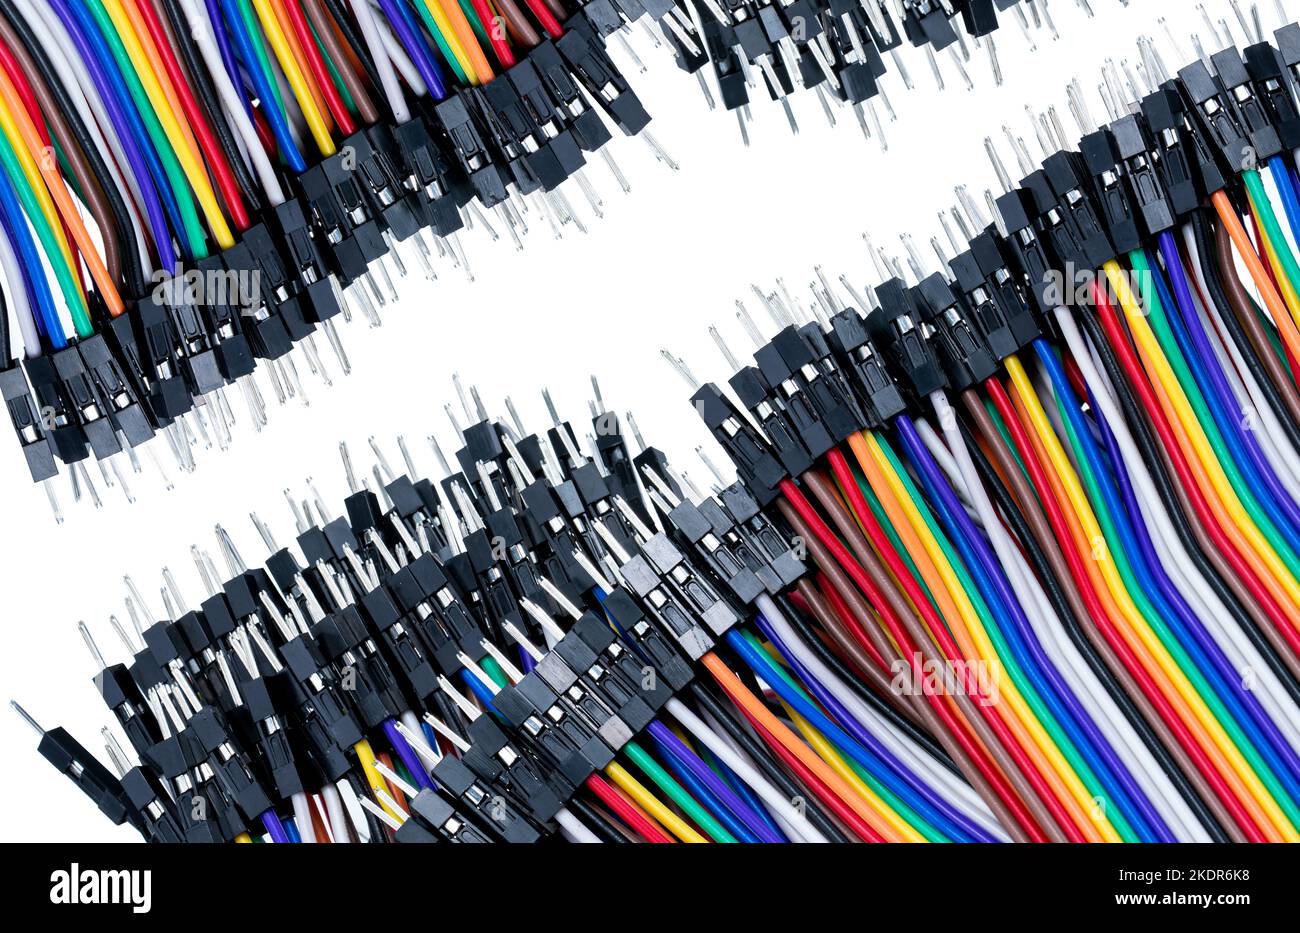 Flachbandkabel oder mehradriges planares Kabel auf weißem Hintergrund. Flachbandkabel mit Stiftsteckern. Mehrfarbiger Flachbandcomputer mit Anschlusskabel. Stockfoto